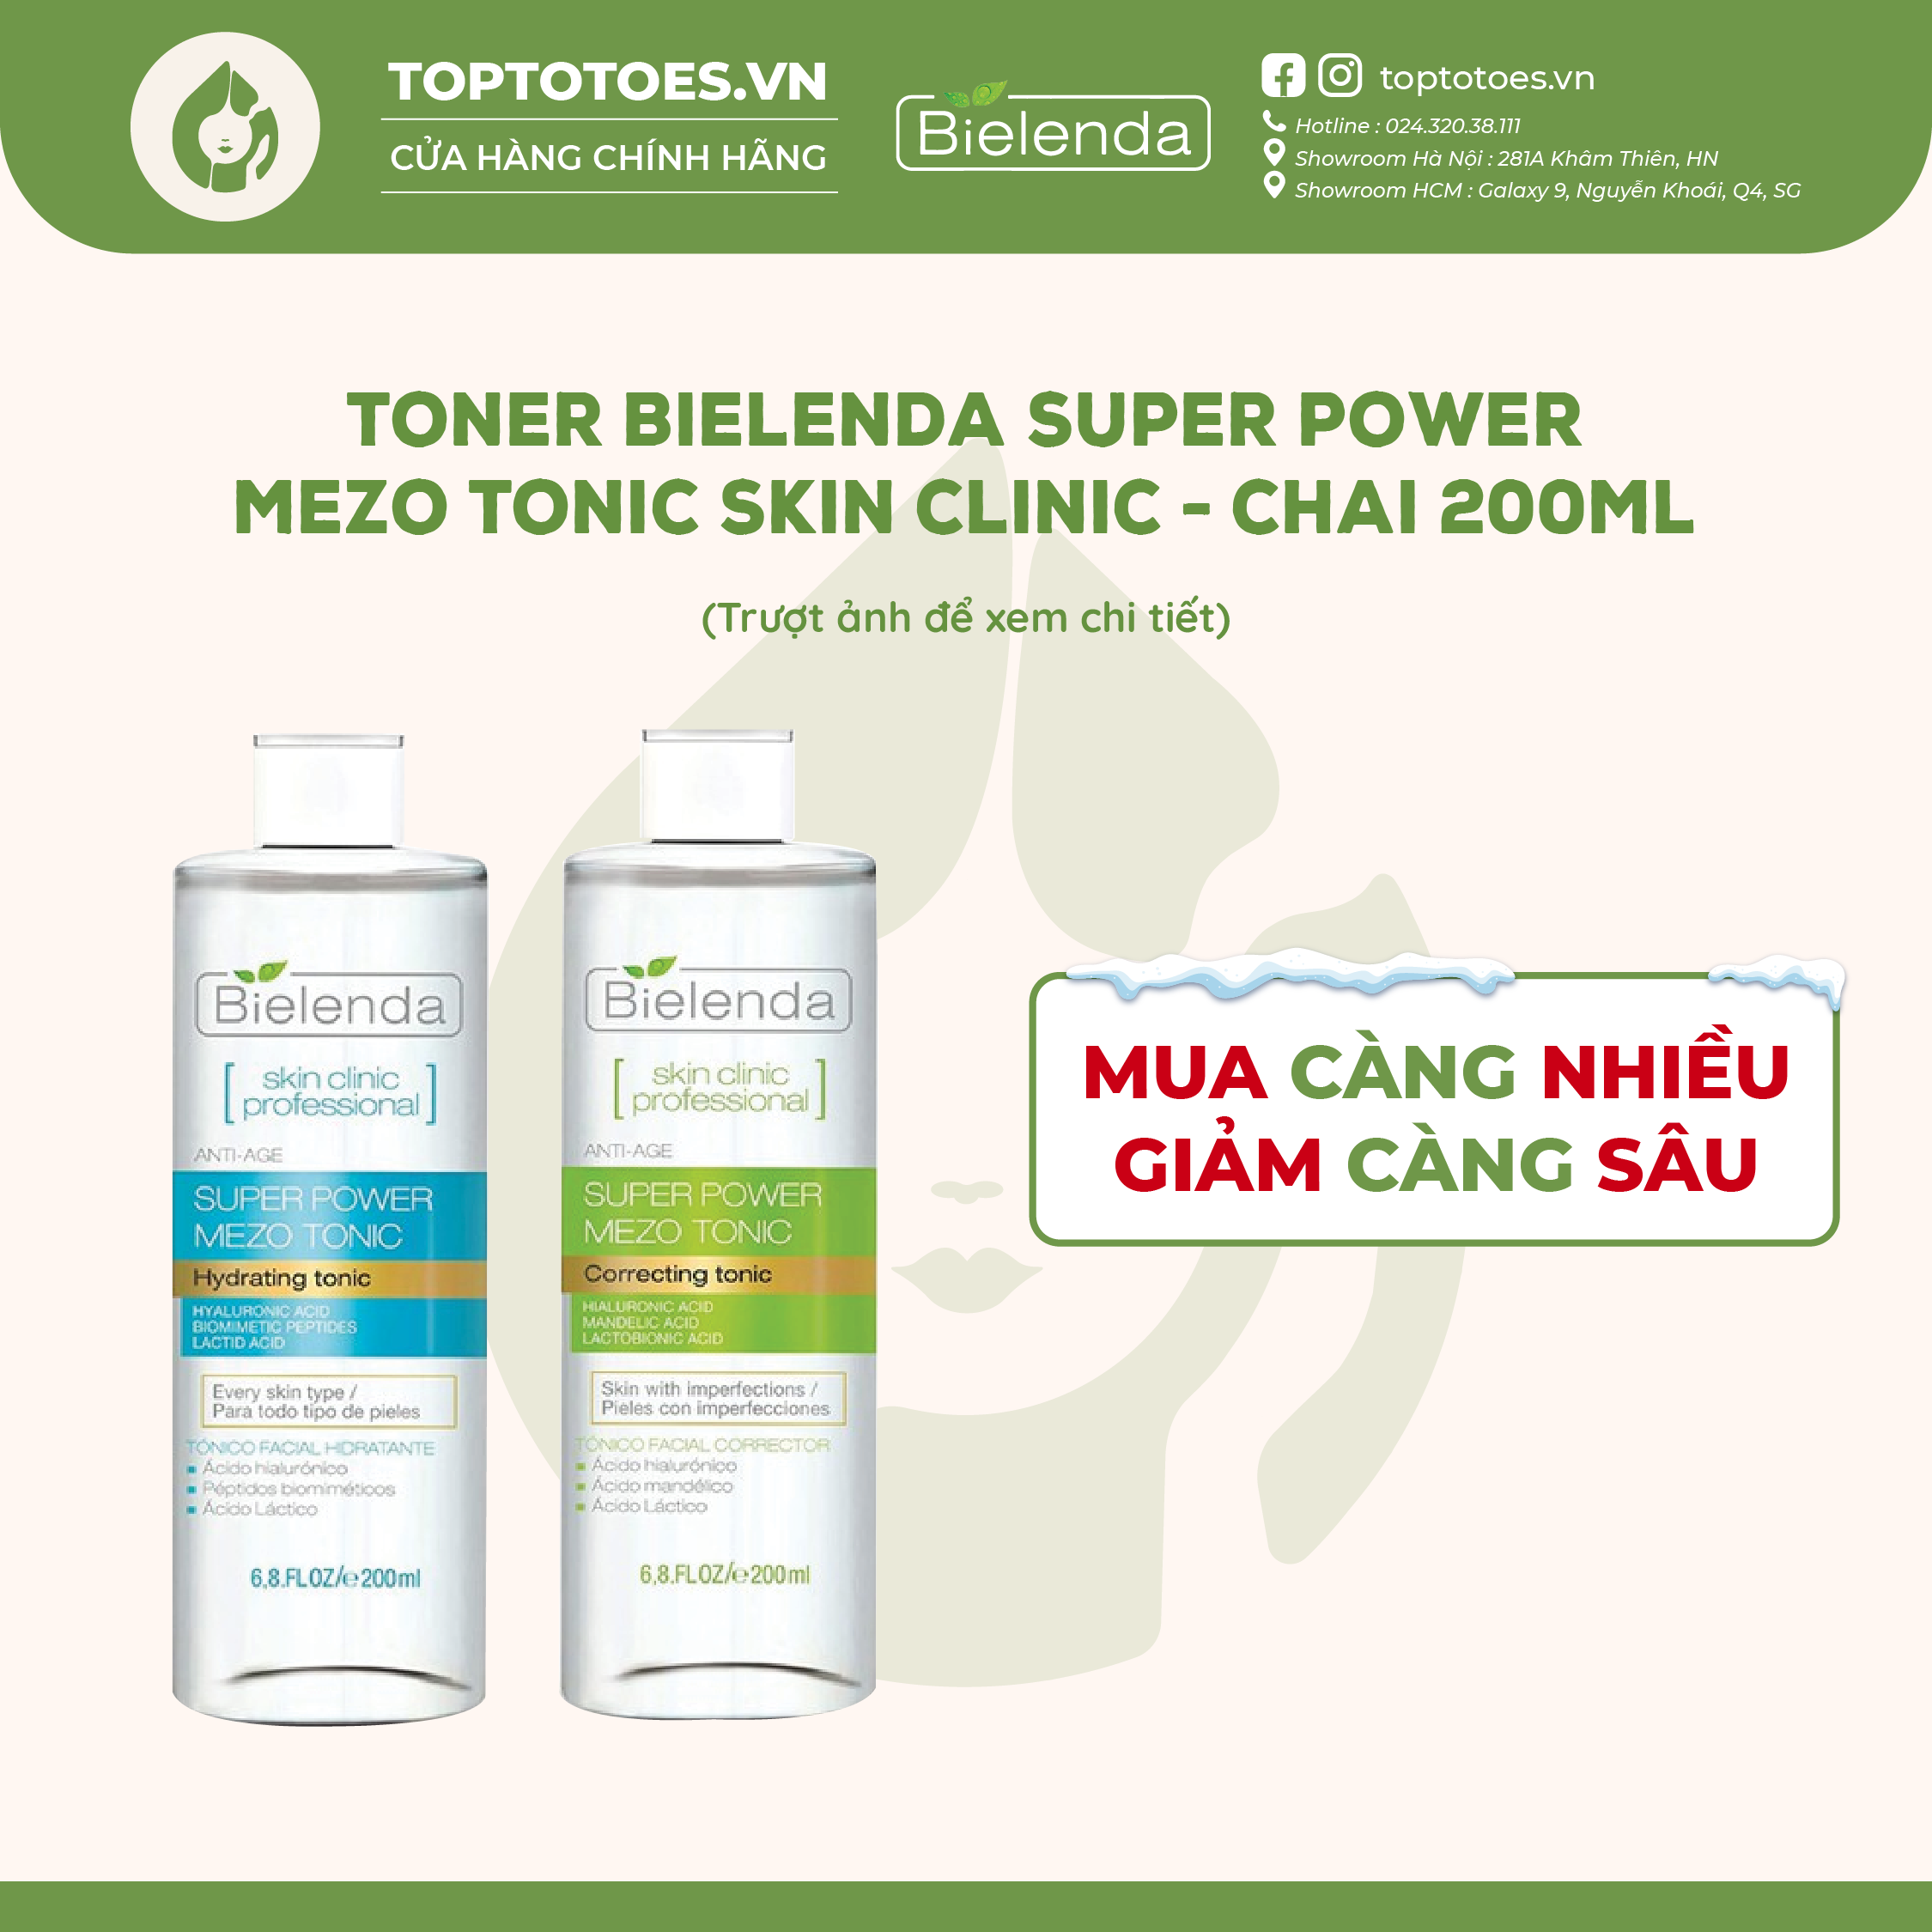 Toner Bielenda Super Power Mezo Tonic Skin Clinic Correcting làm căng bóng mờ thâm/ Moisturizing cấp nước dưỡng ẩm